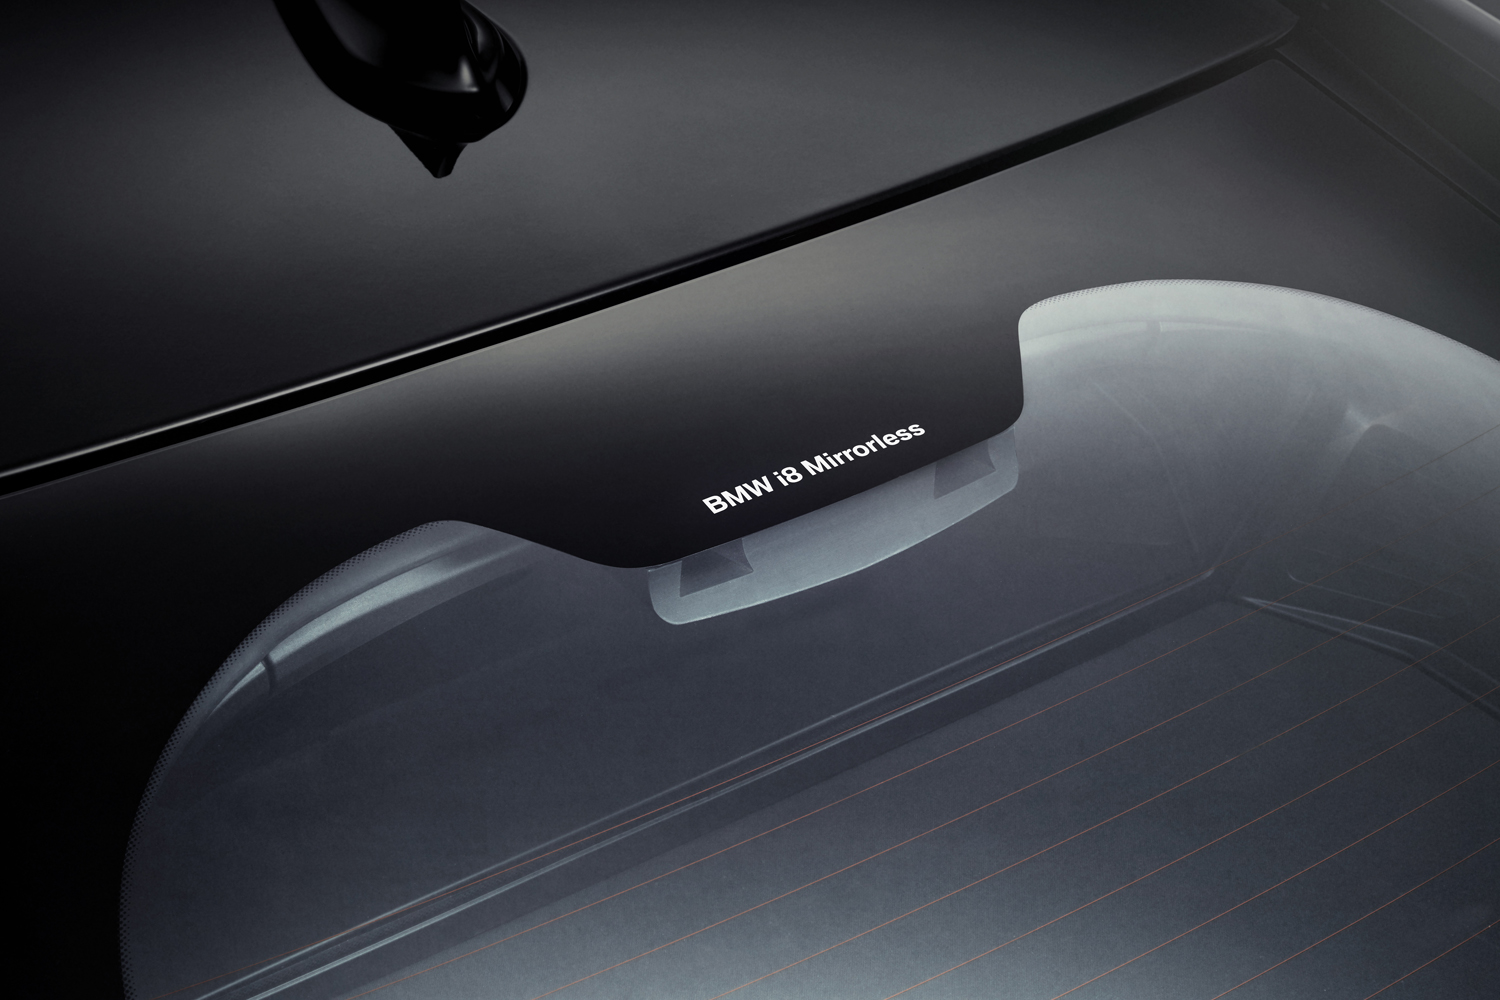 BMW i8 Mirrorless concept